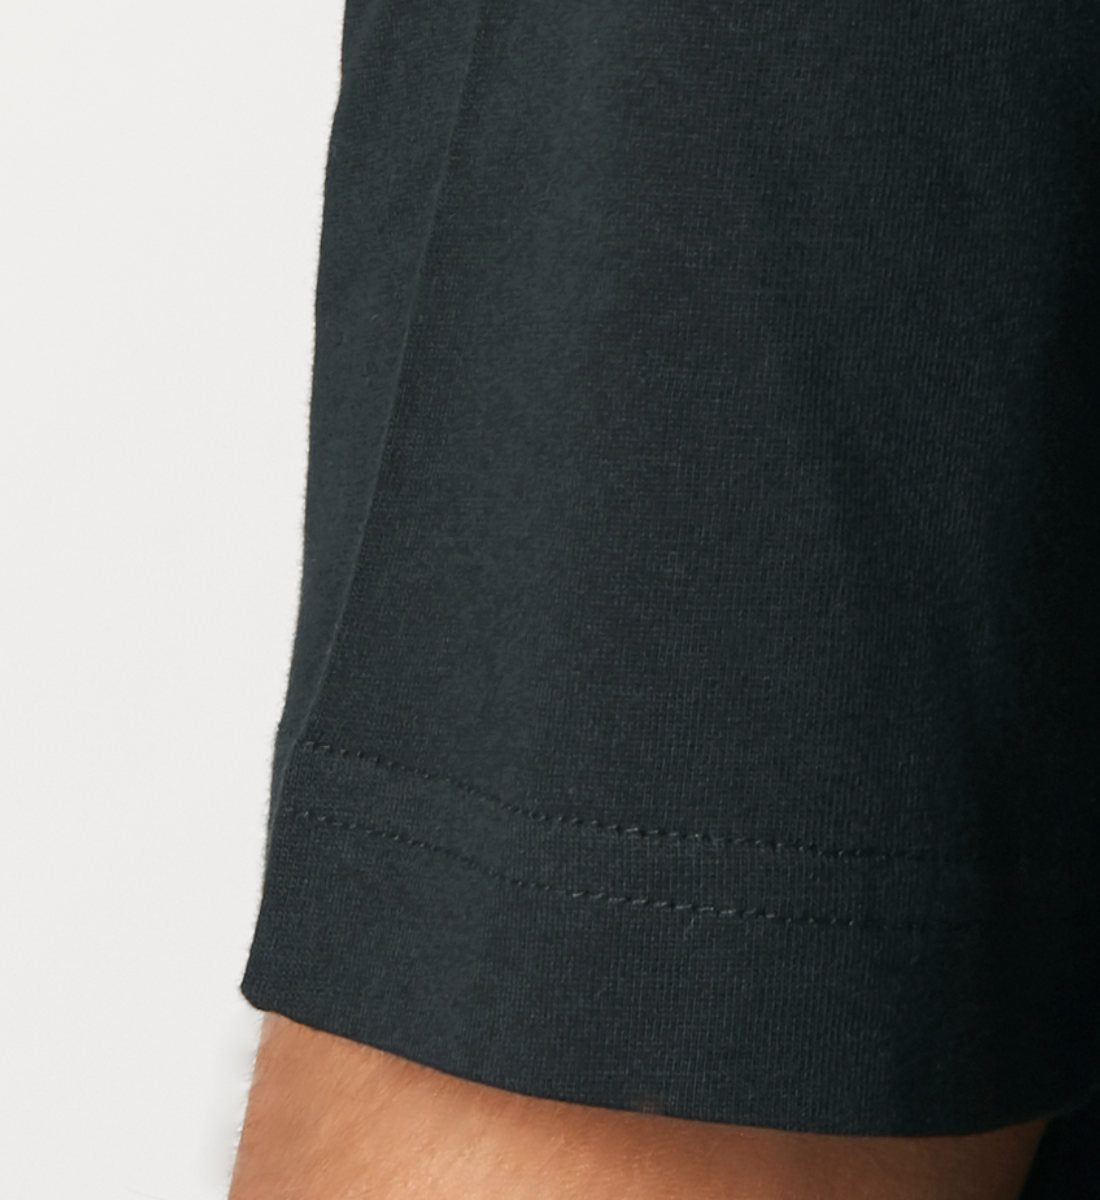 Schwarzes T-Shirt Unisex Relaxed Fit für Frauen und Männer bestickt mit dem Design der Roger Rockawoo Brand Kollektion